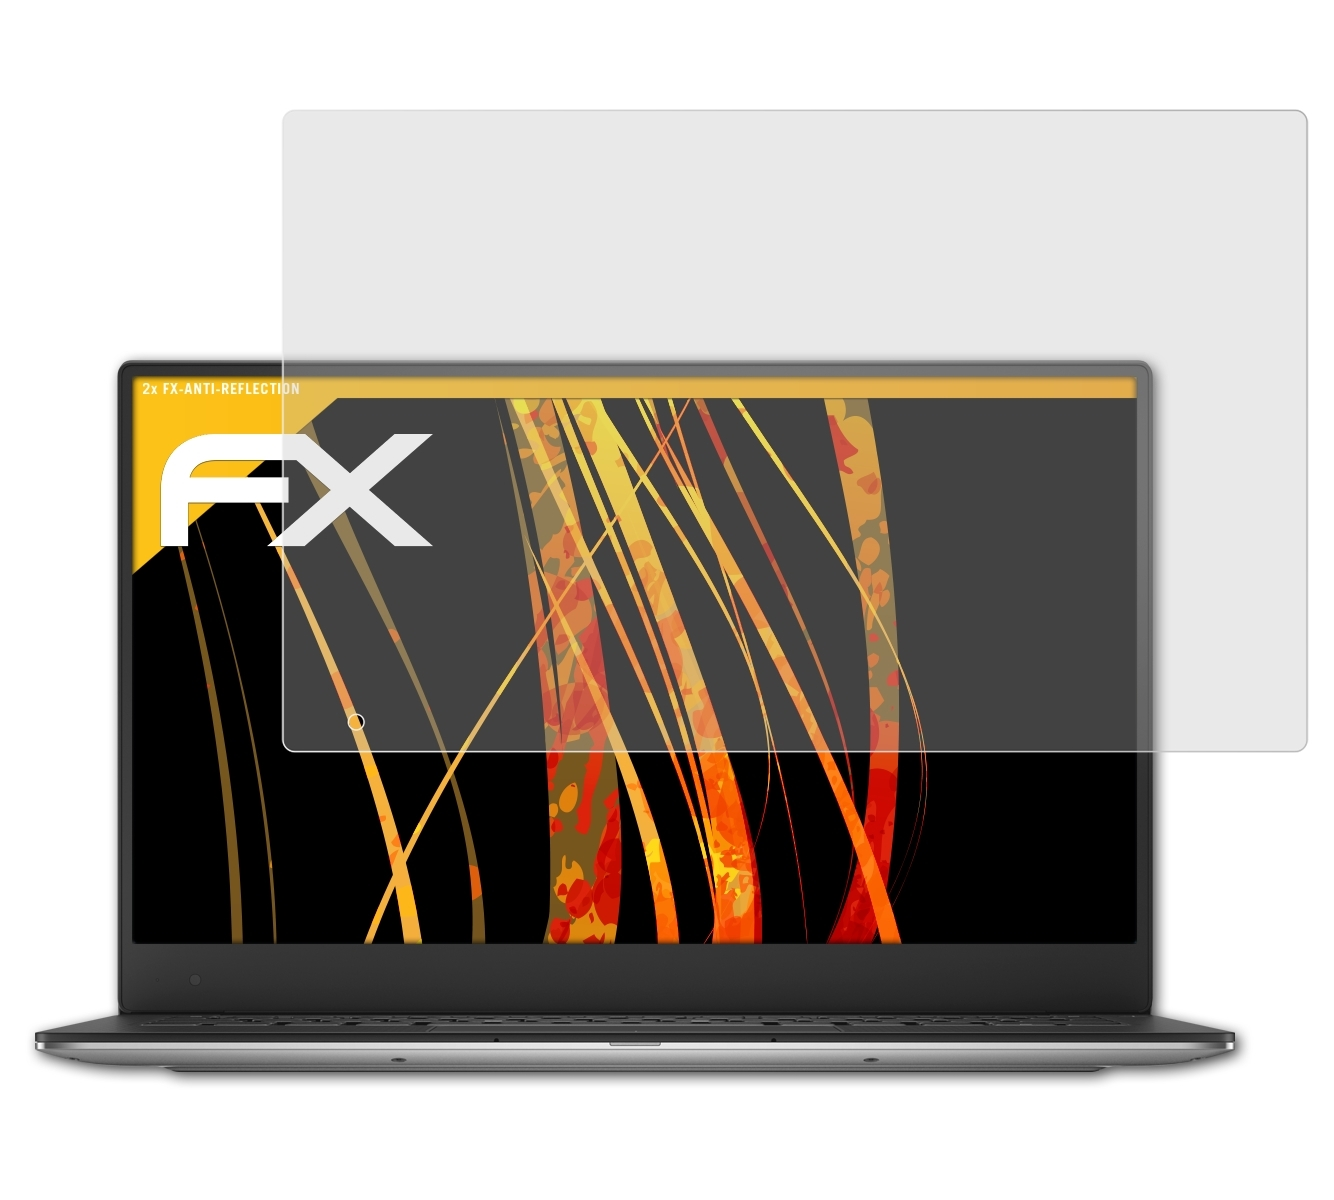 ATFOLIX 13 Version FX-Antireflex QHD+, Displayschutz(für (9343 Ultrabook 2015)) XPS Dell 2x